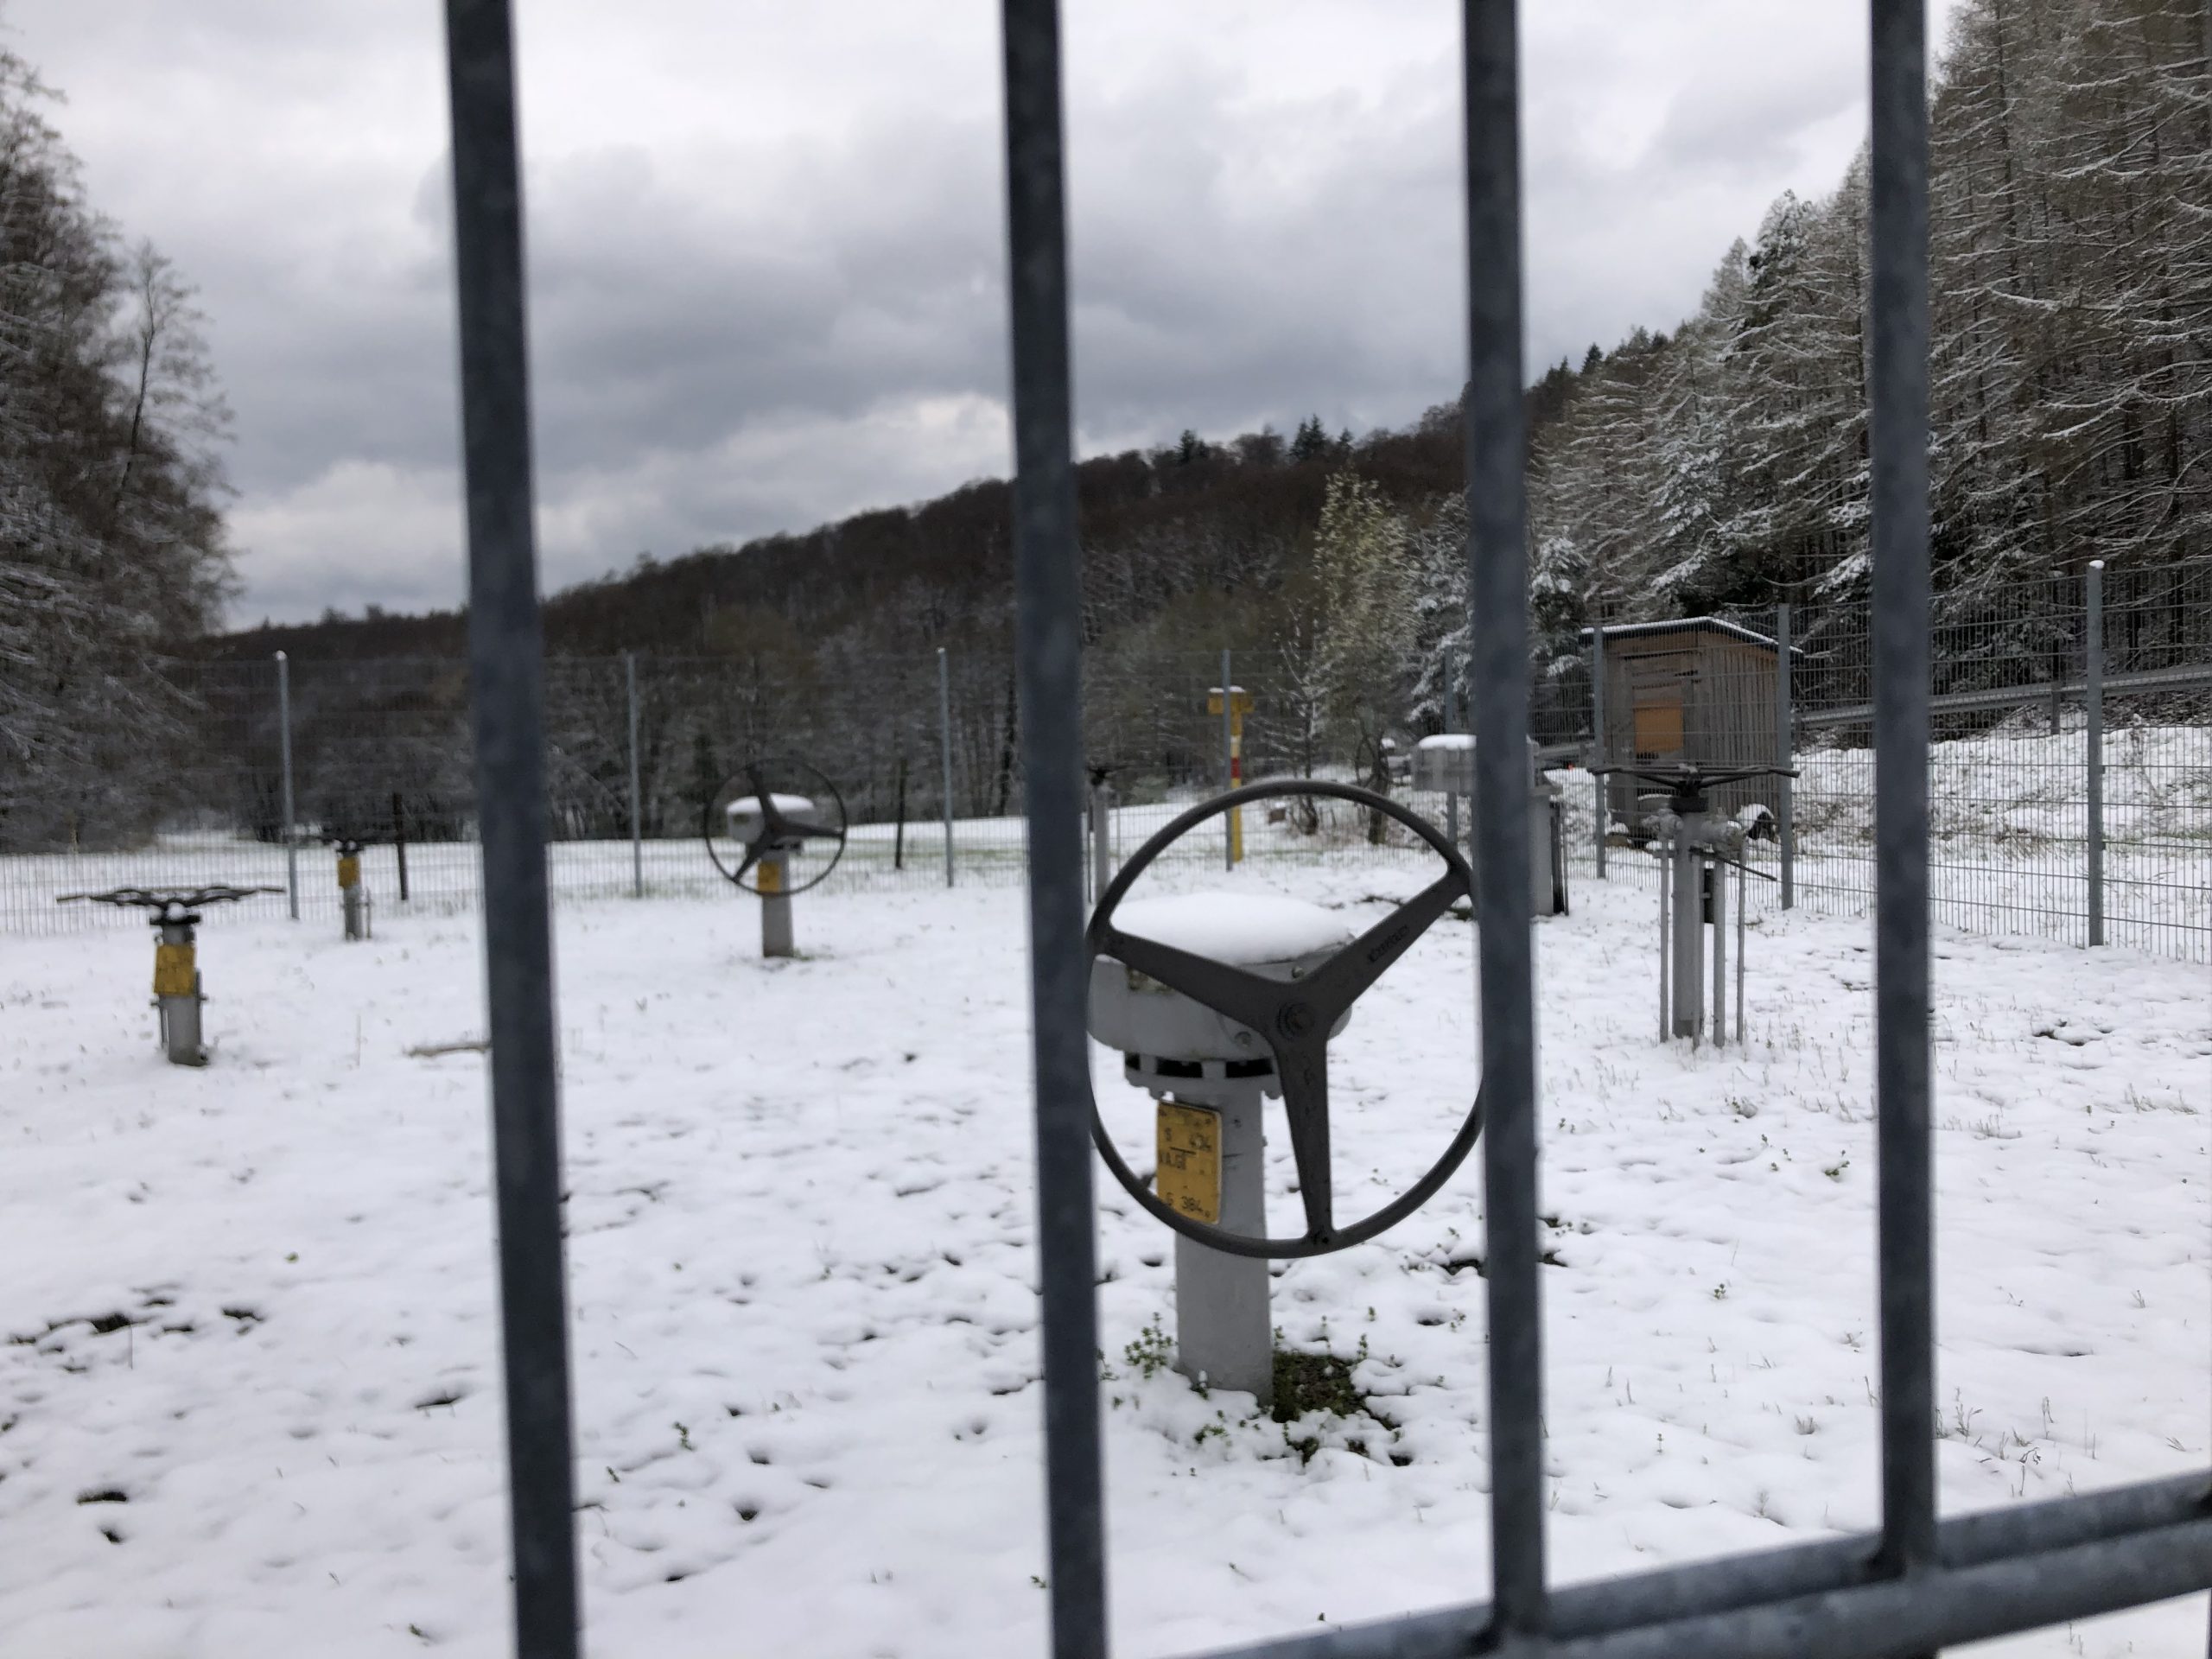 Europa, în beznă și frig la iarnă! România, victima jocurilor pe piața energetică?